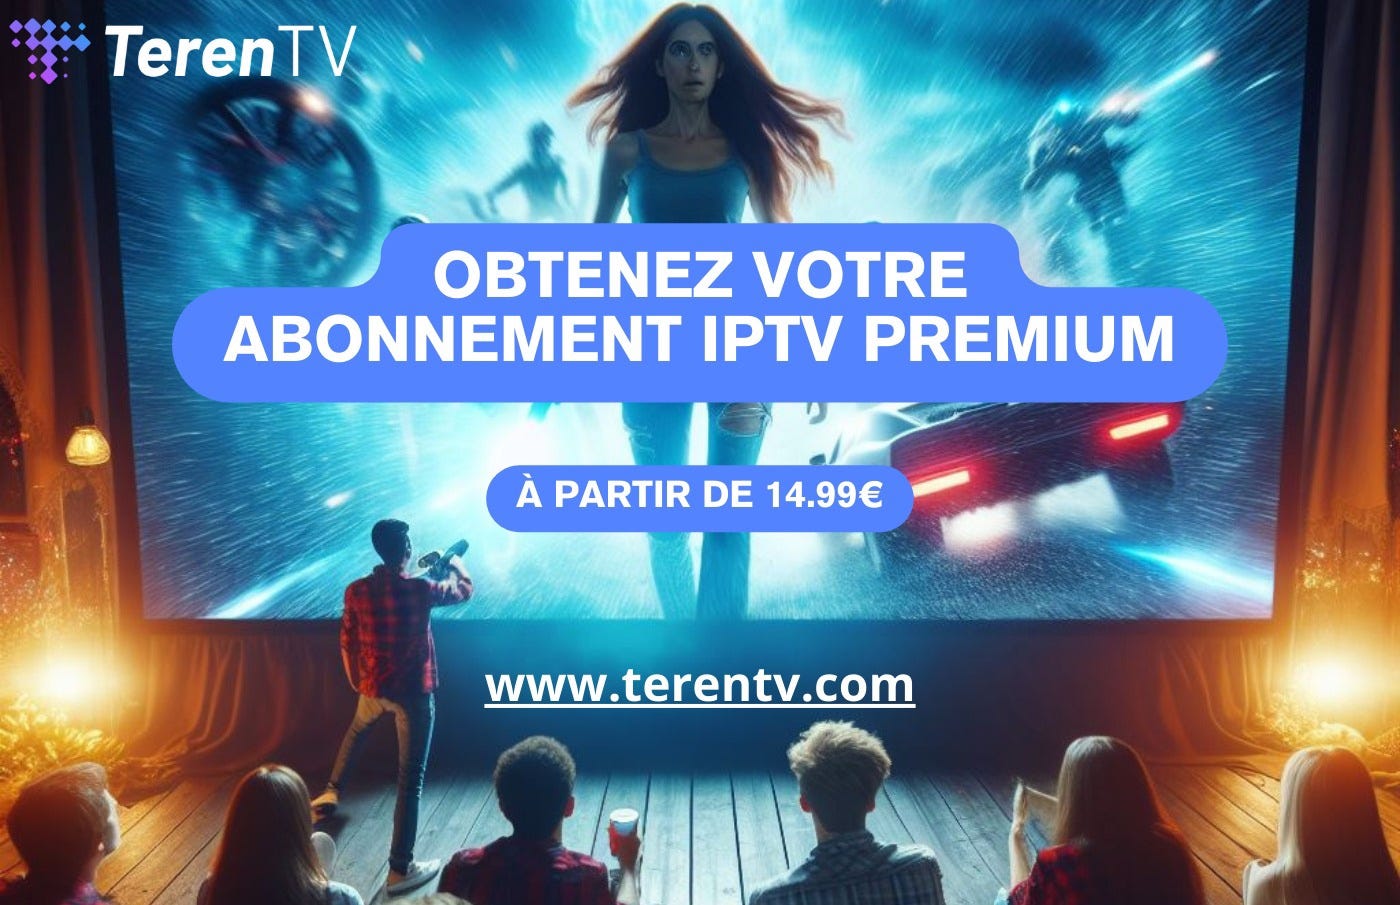 Bien sûr, voici un exemple de blog sur l’abonnement IPTV en France :